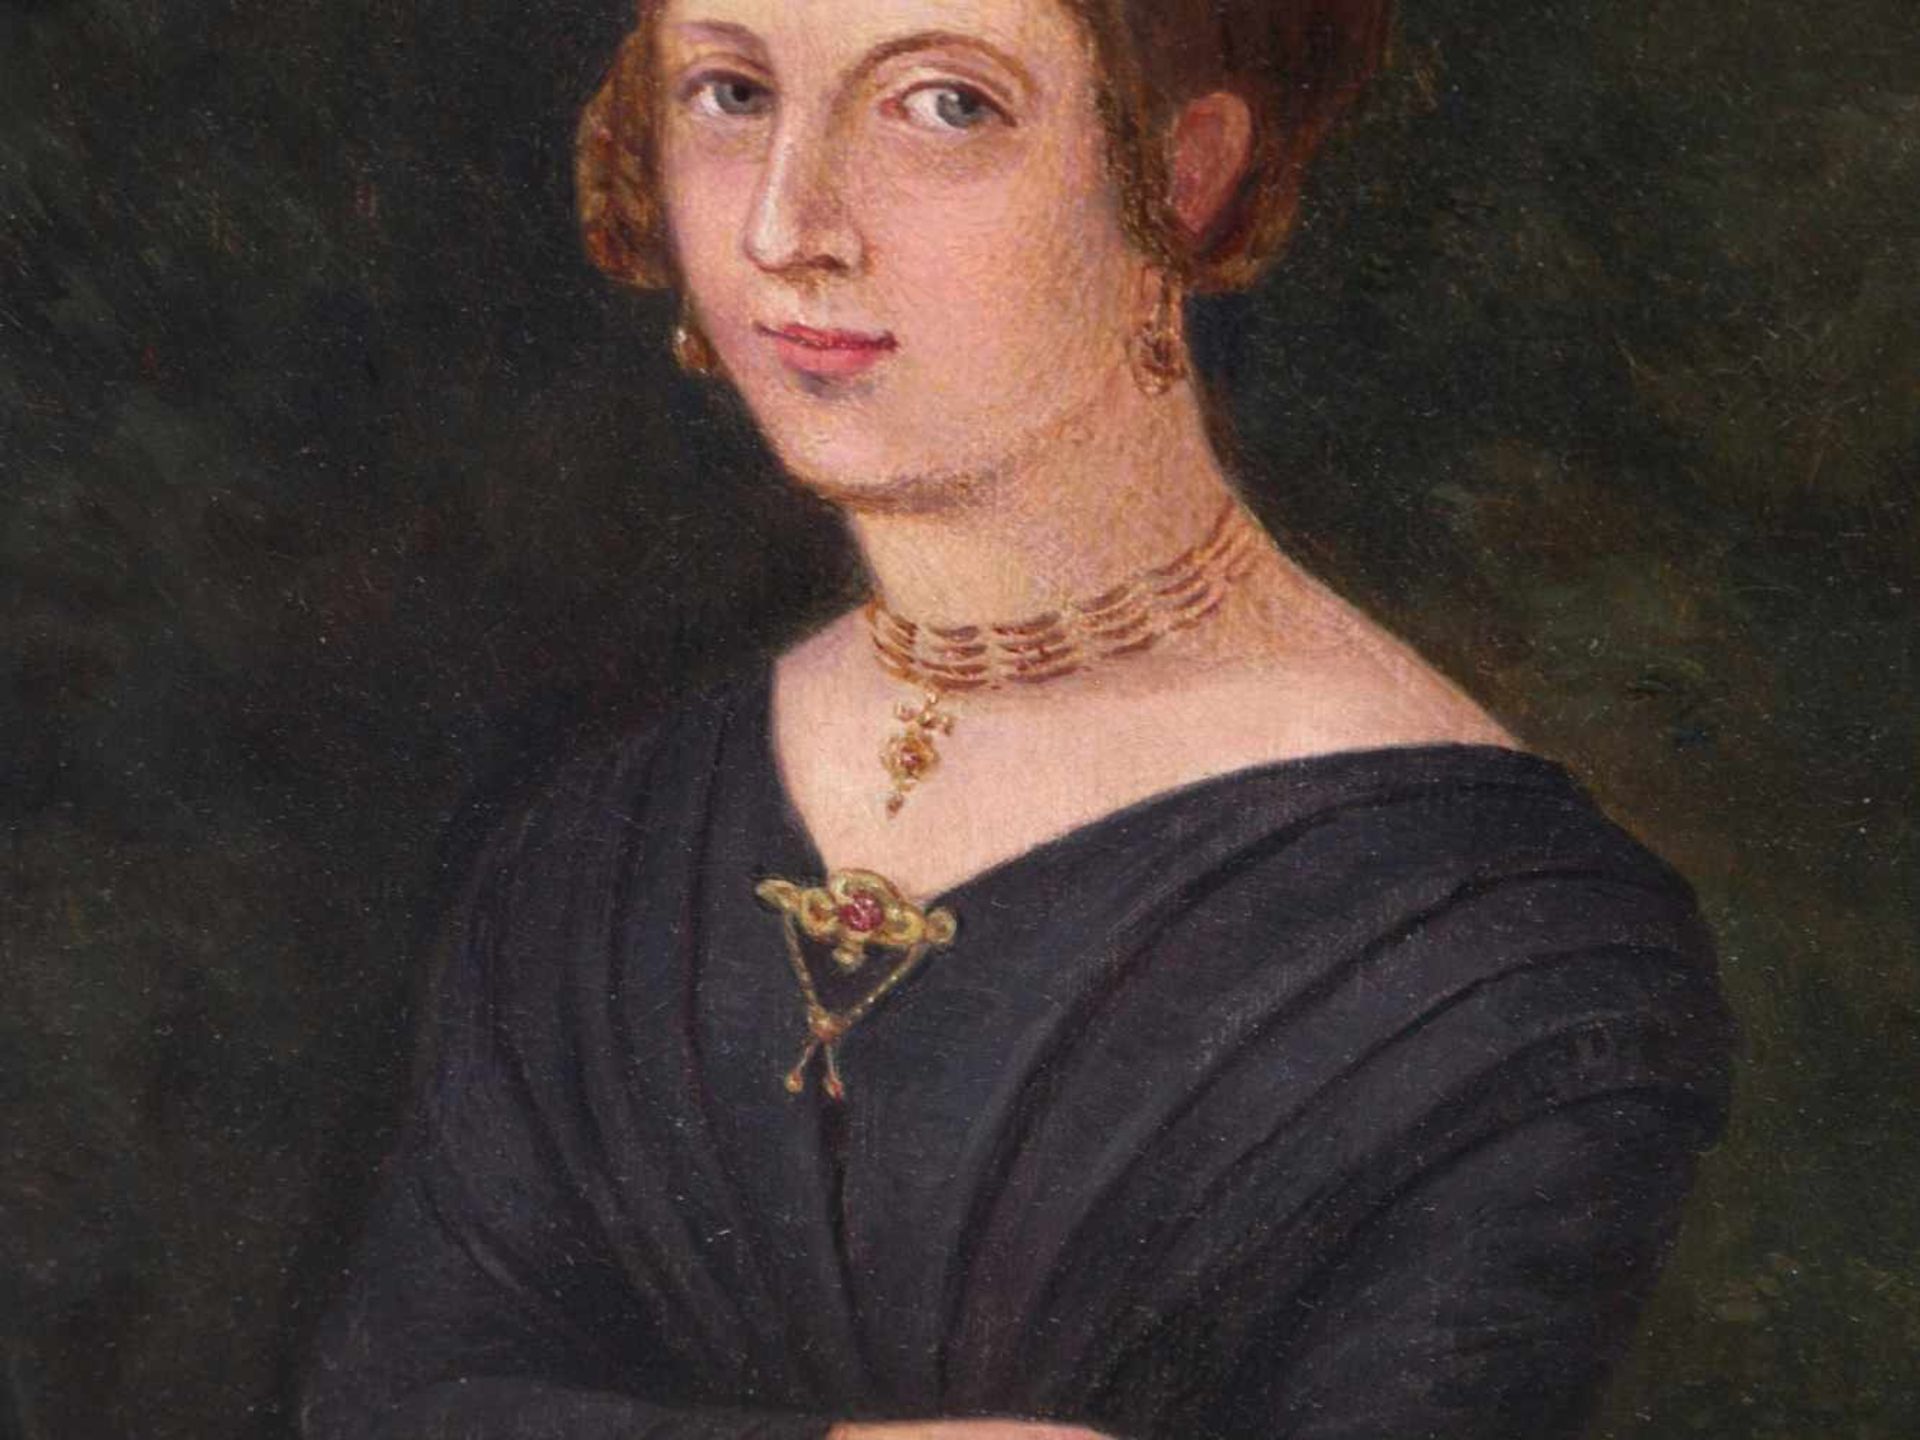 Unbekannt - Biedermeier-Portrait einer jungen Dame um 1850 - Image 7 of 10